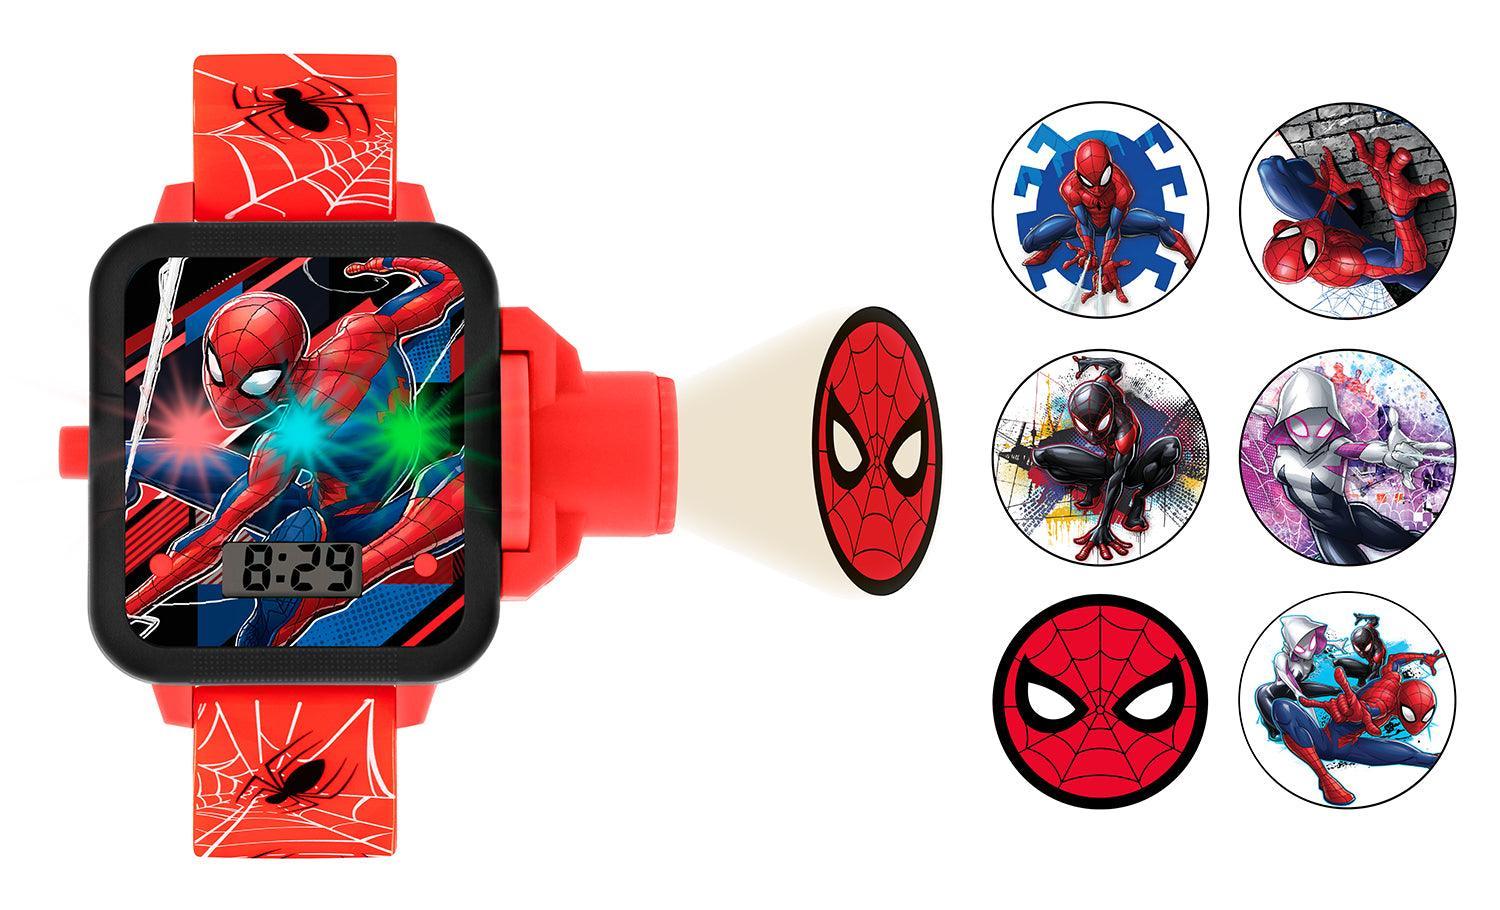 Disney LED Watch Spider-Man - Montre pour enfants avec affichage LED pour  la date et